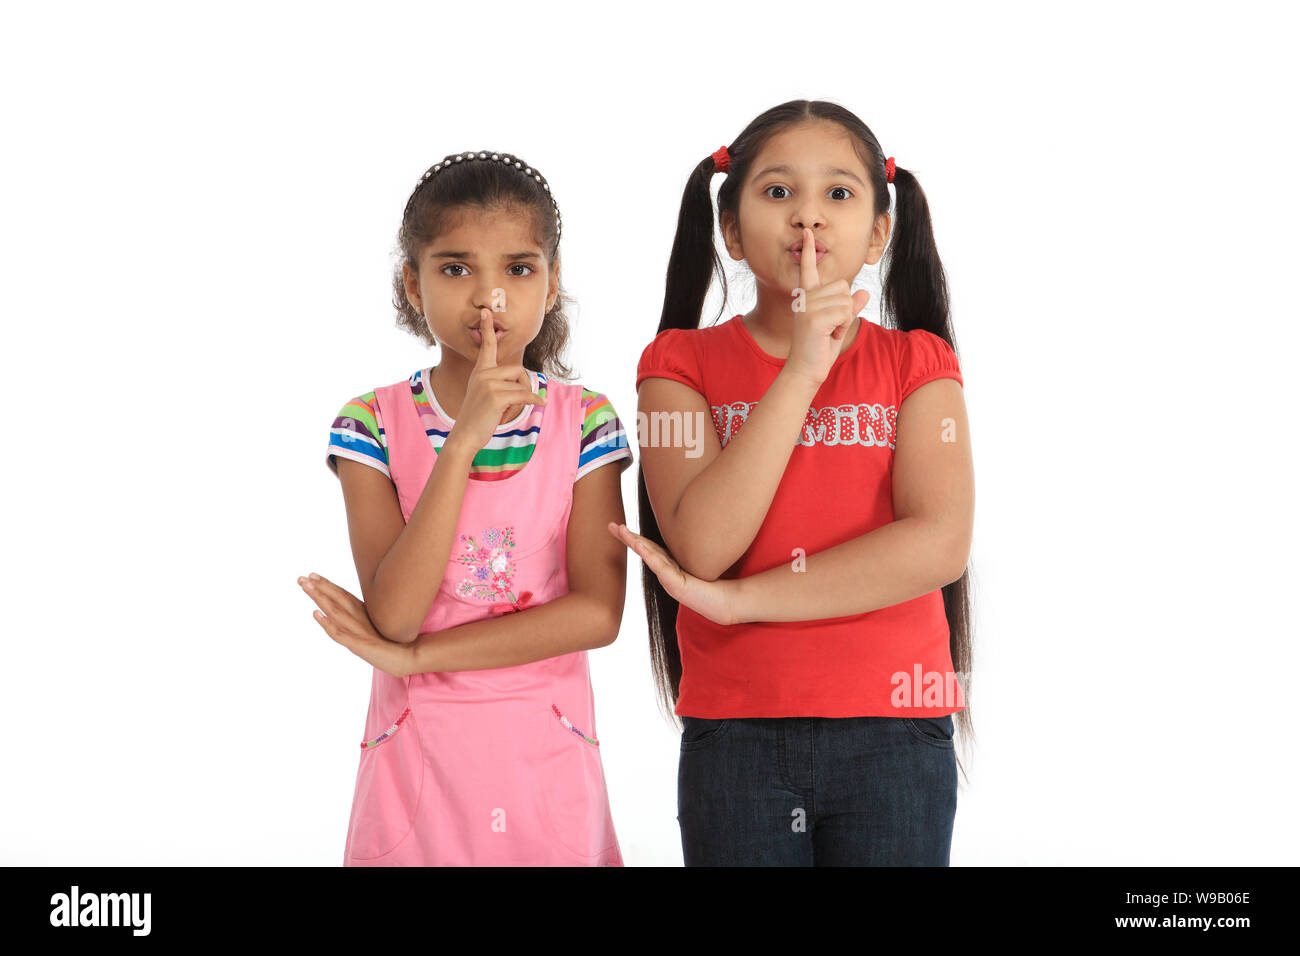 Zwei Mädchen Mit Finger Auf Den Lippen Stockfotografie Alamy 